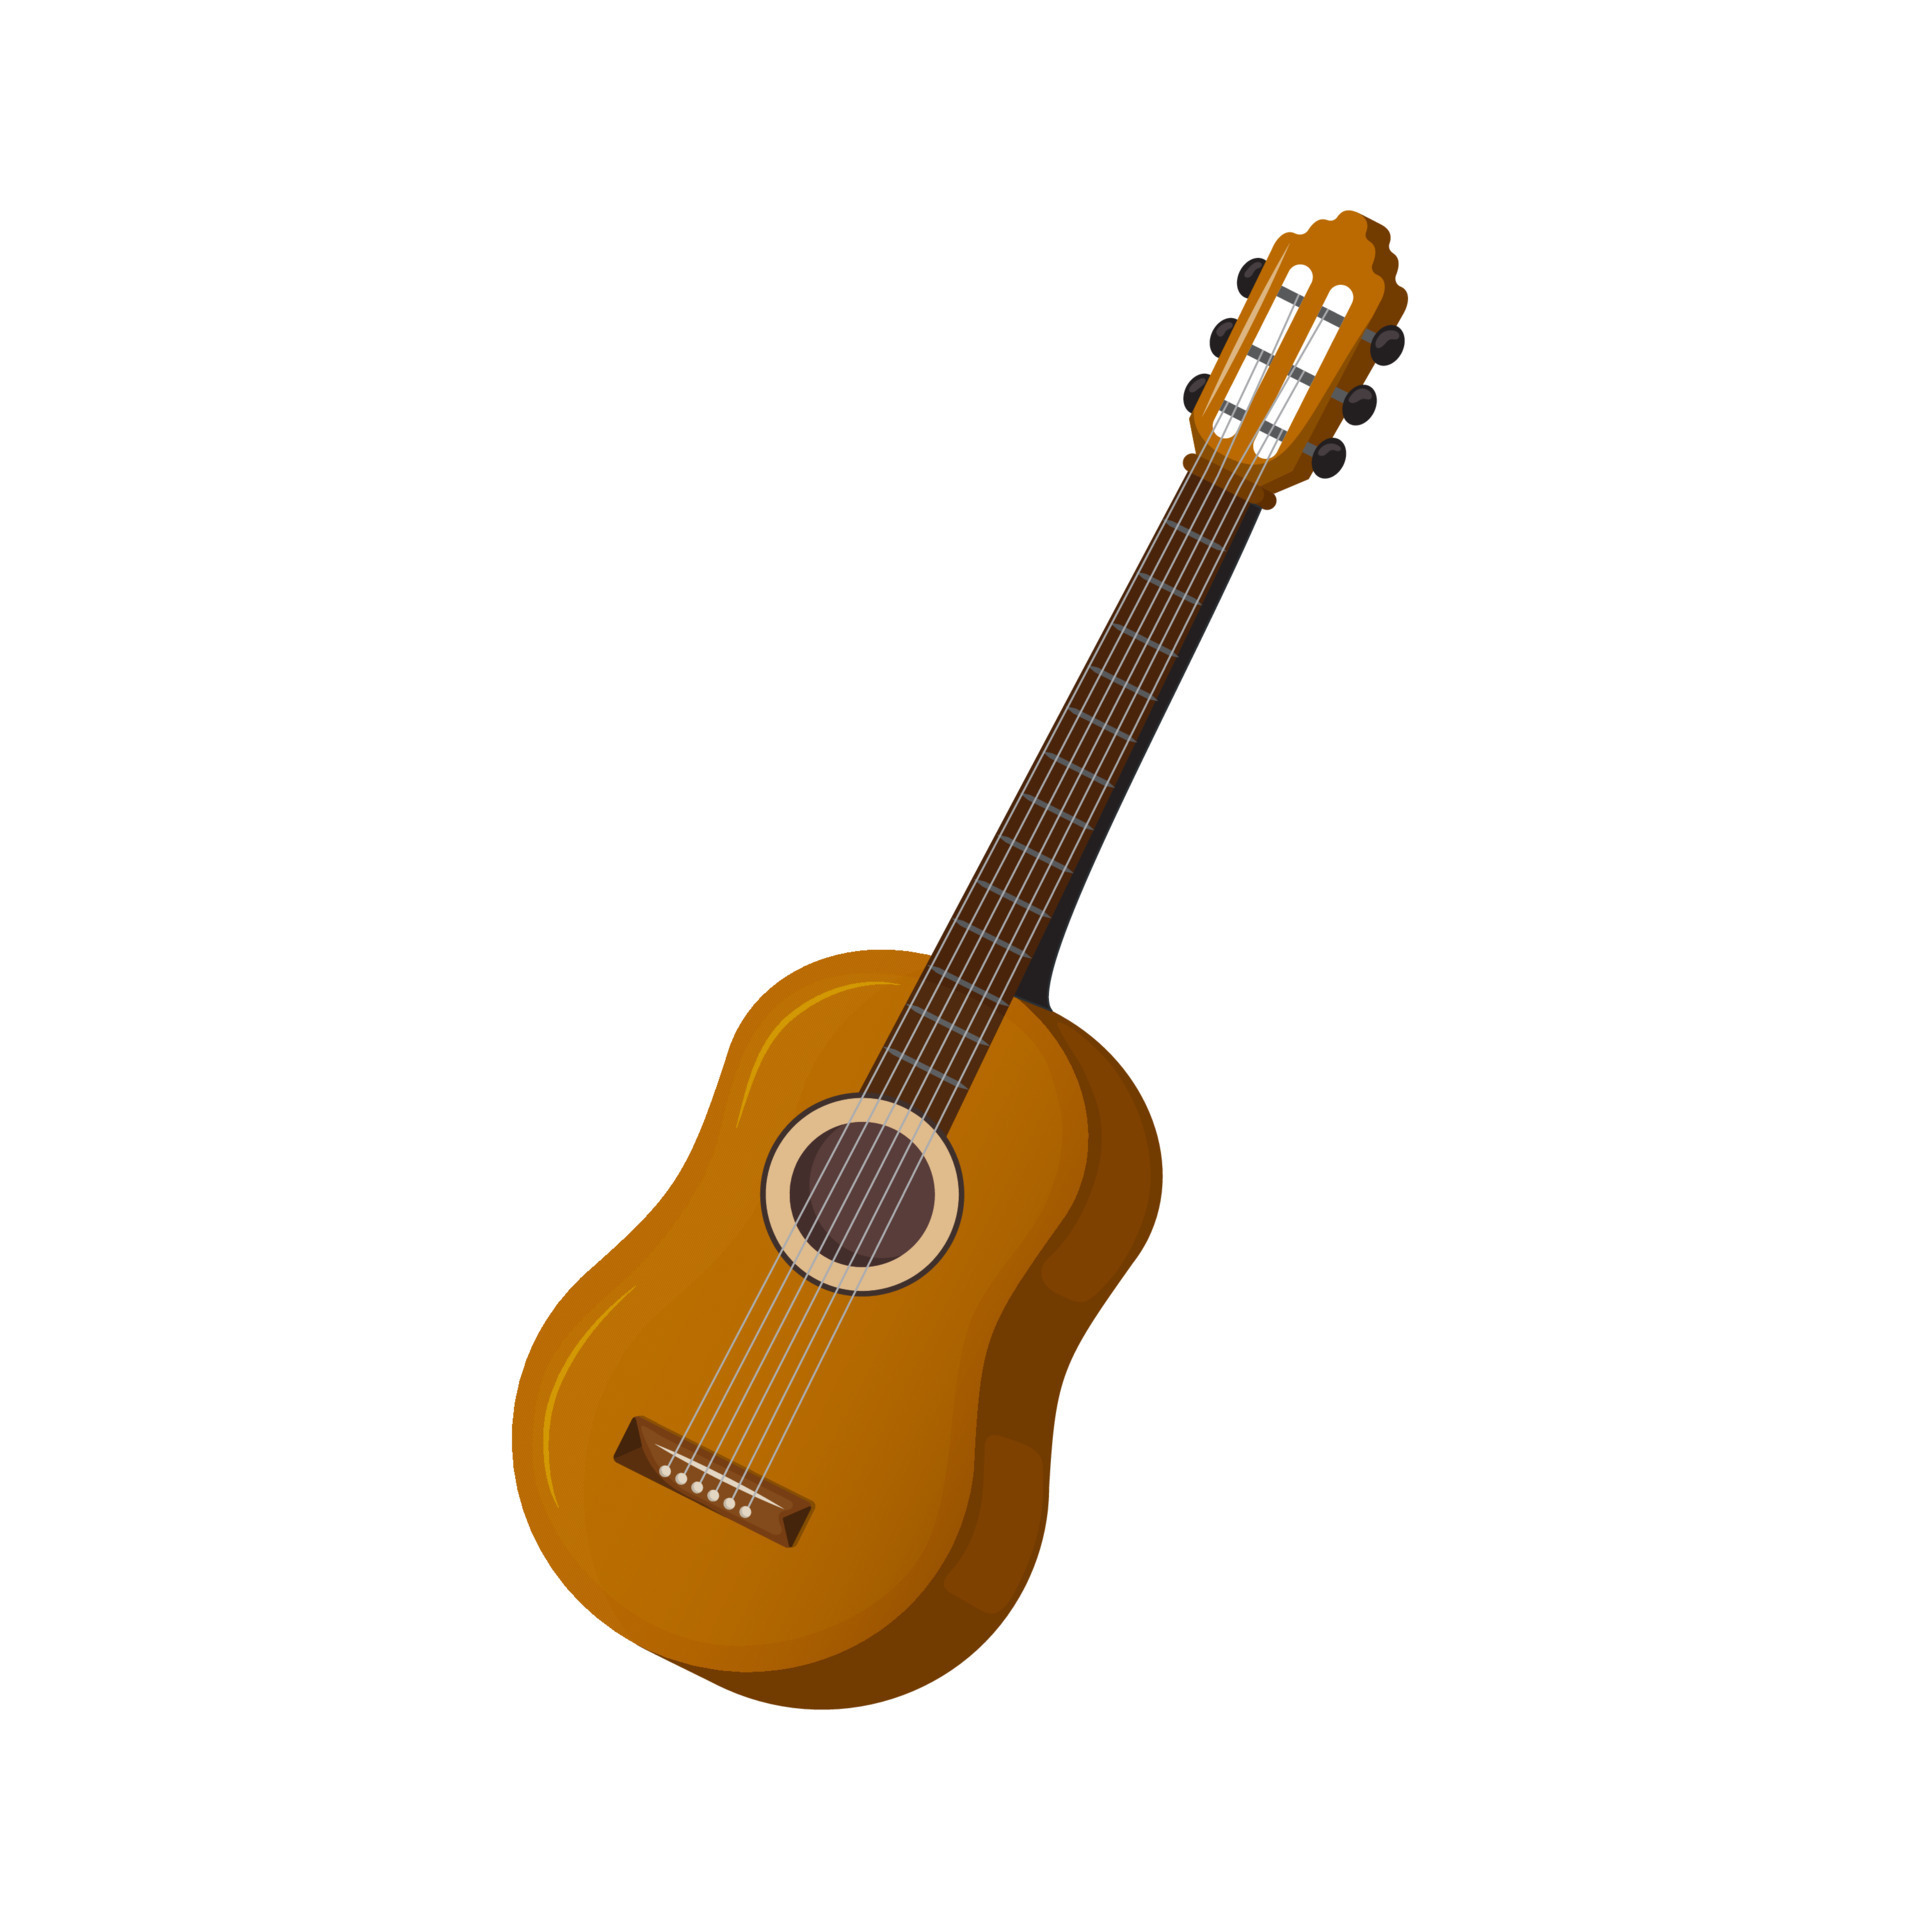 https://static.vecteezy.com/ti/vecteur-libre/p3/17603185-instrument-de-musique-a-cordes-guitare-guitare-classique-en-bois-illustrationle-isolee-sur-fond-blanc-vectoriel.jpg